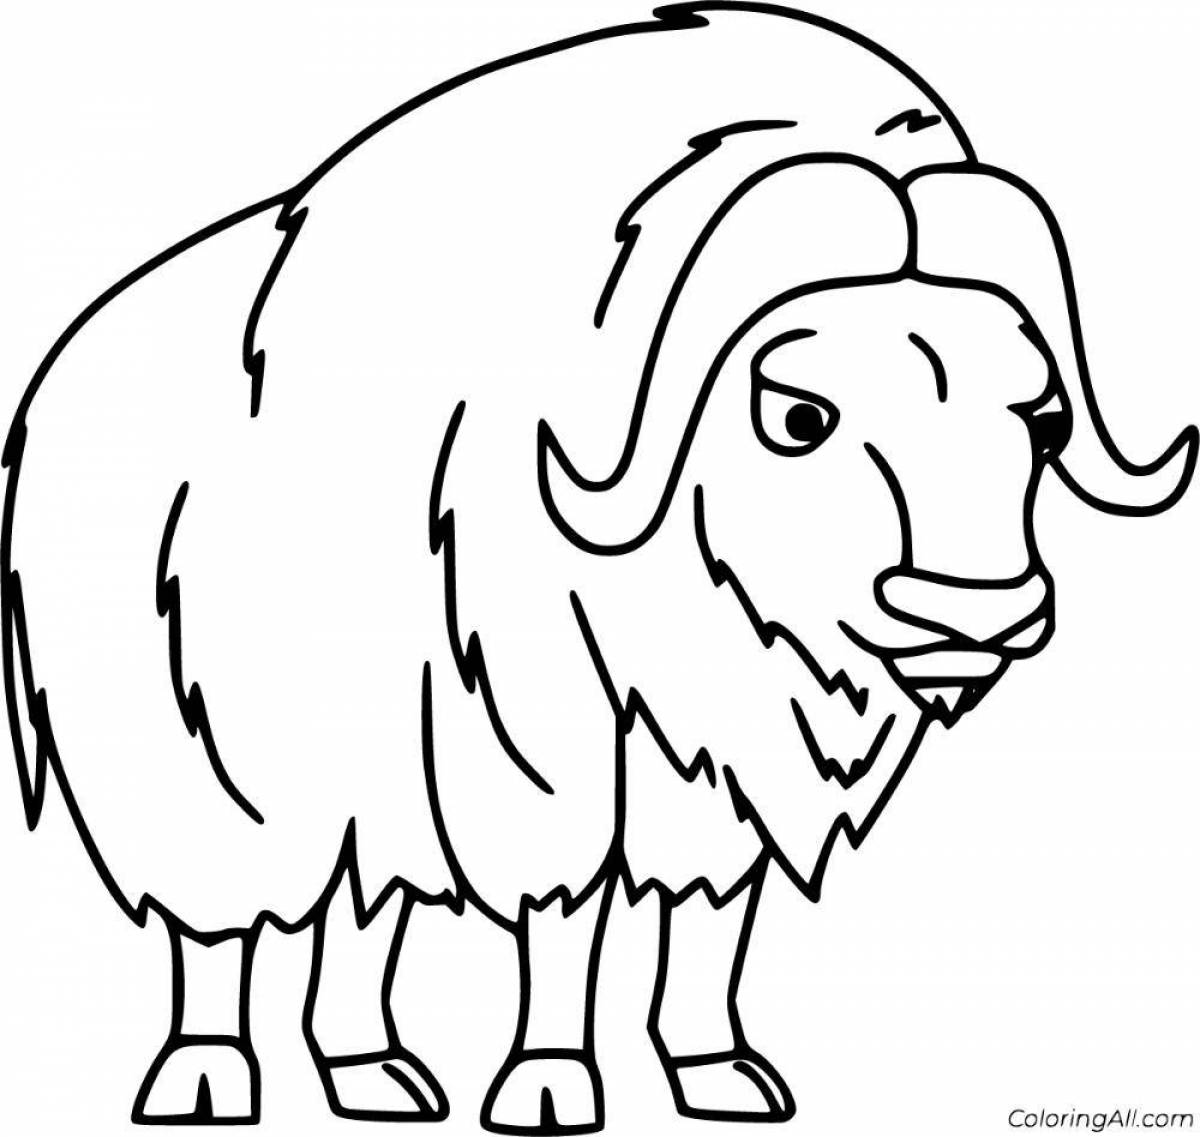 Игривая страница раскраски овцебыка для детей